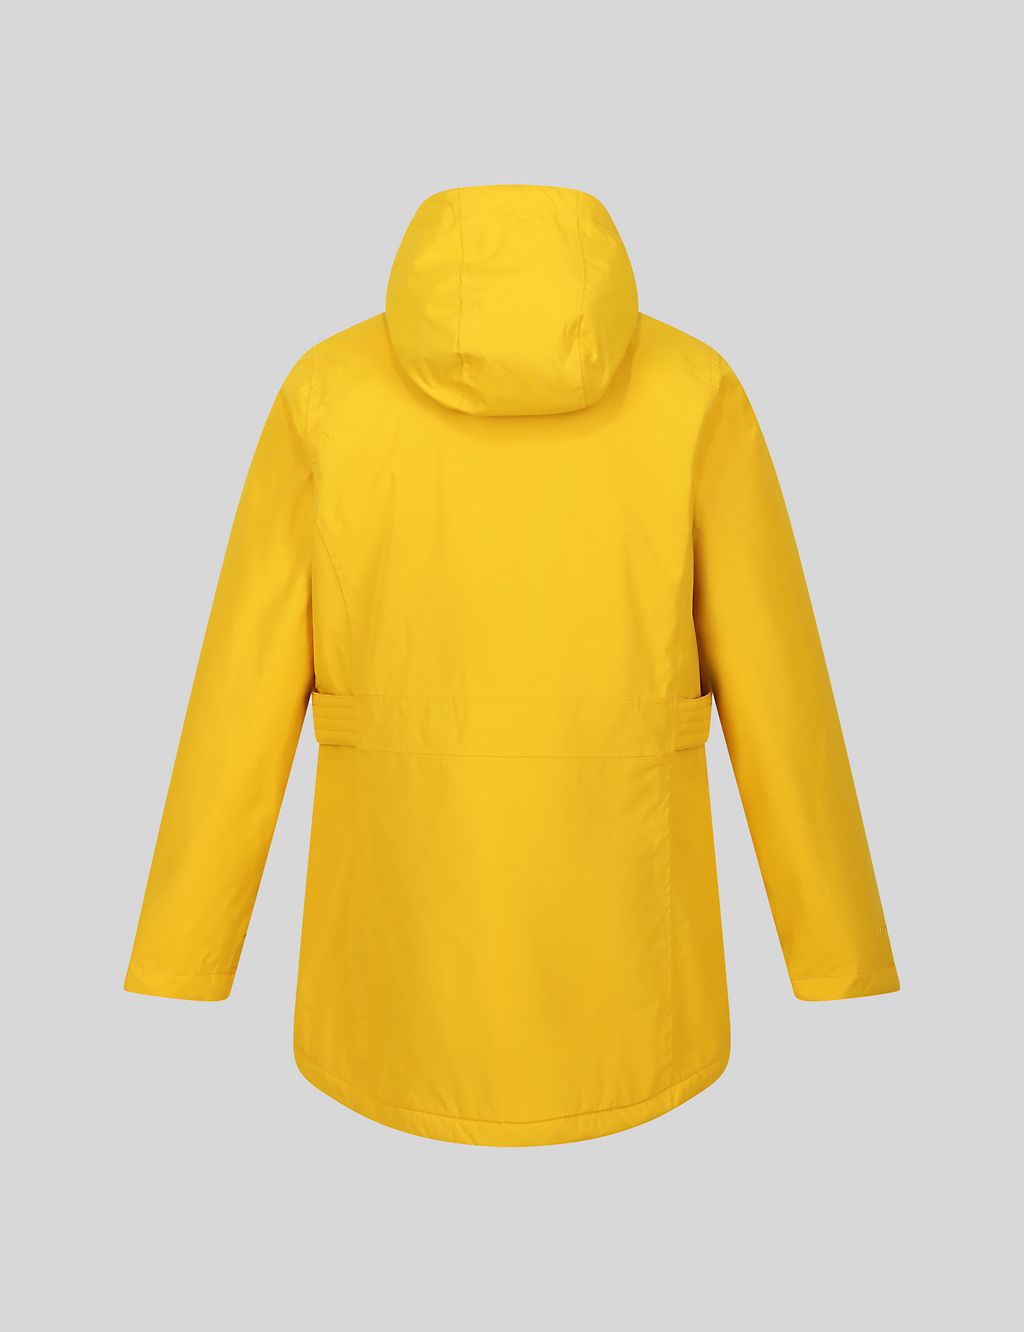 Brenlyn Waterproof Hooded Raincoat 5 of 7